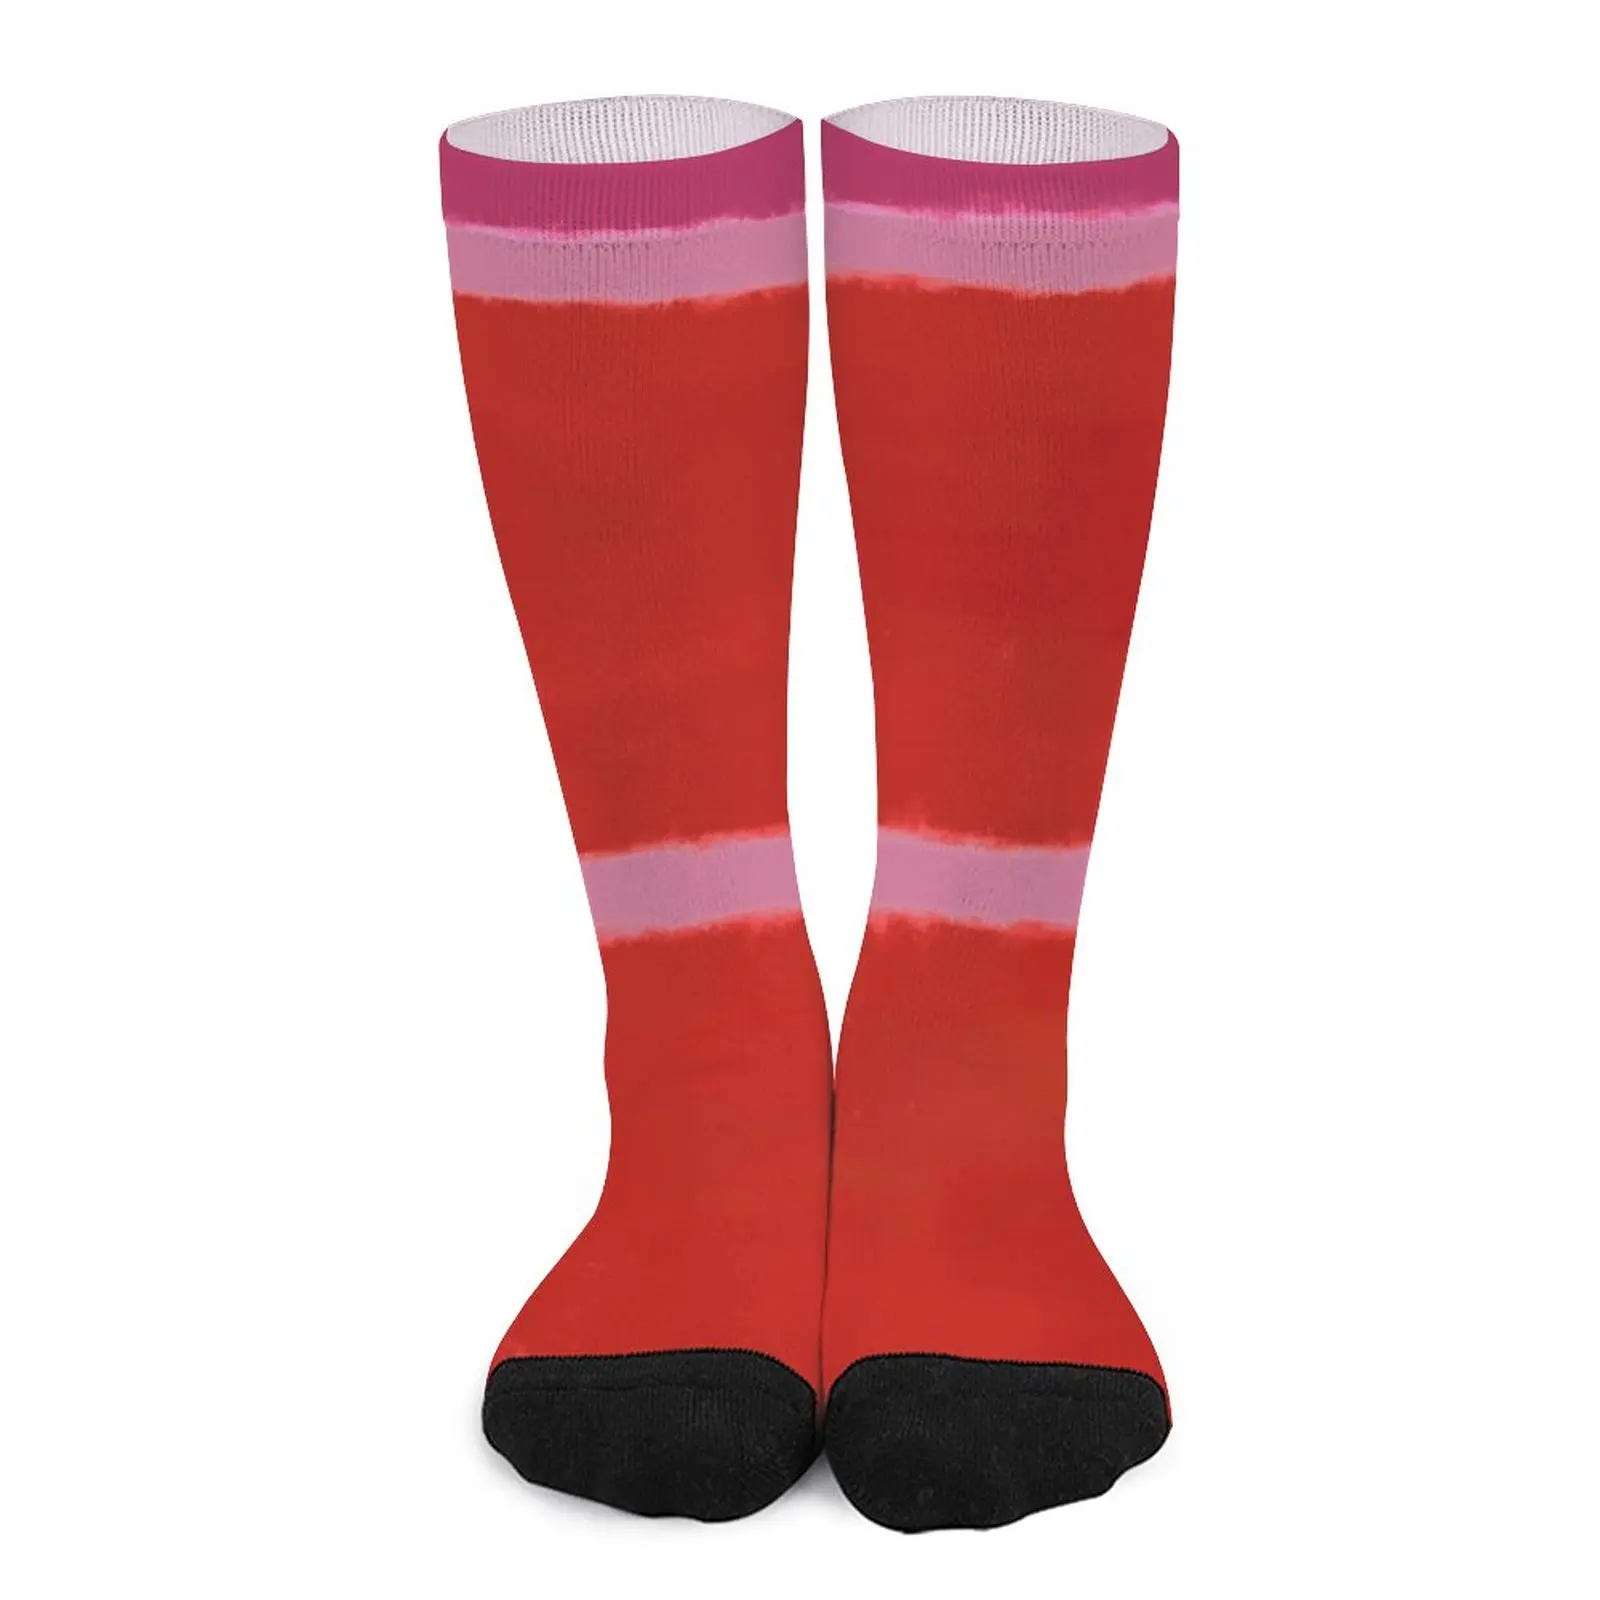 Rothko Inspired #20 Socks hiphop heated socks compression socks men